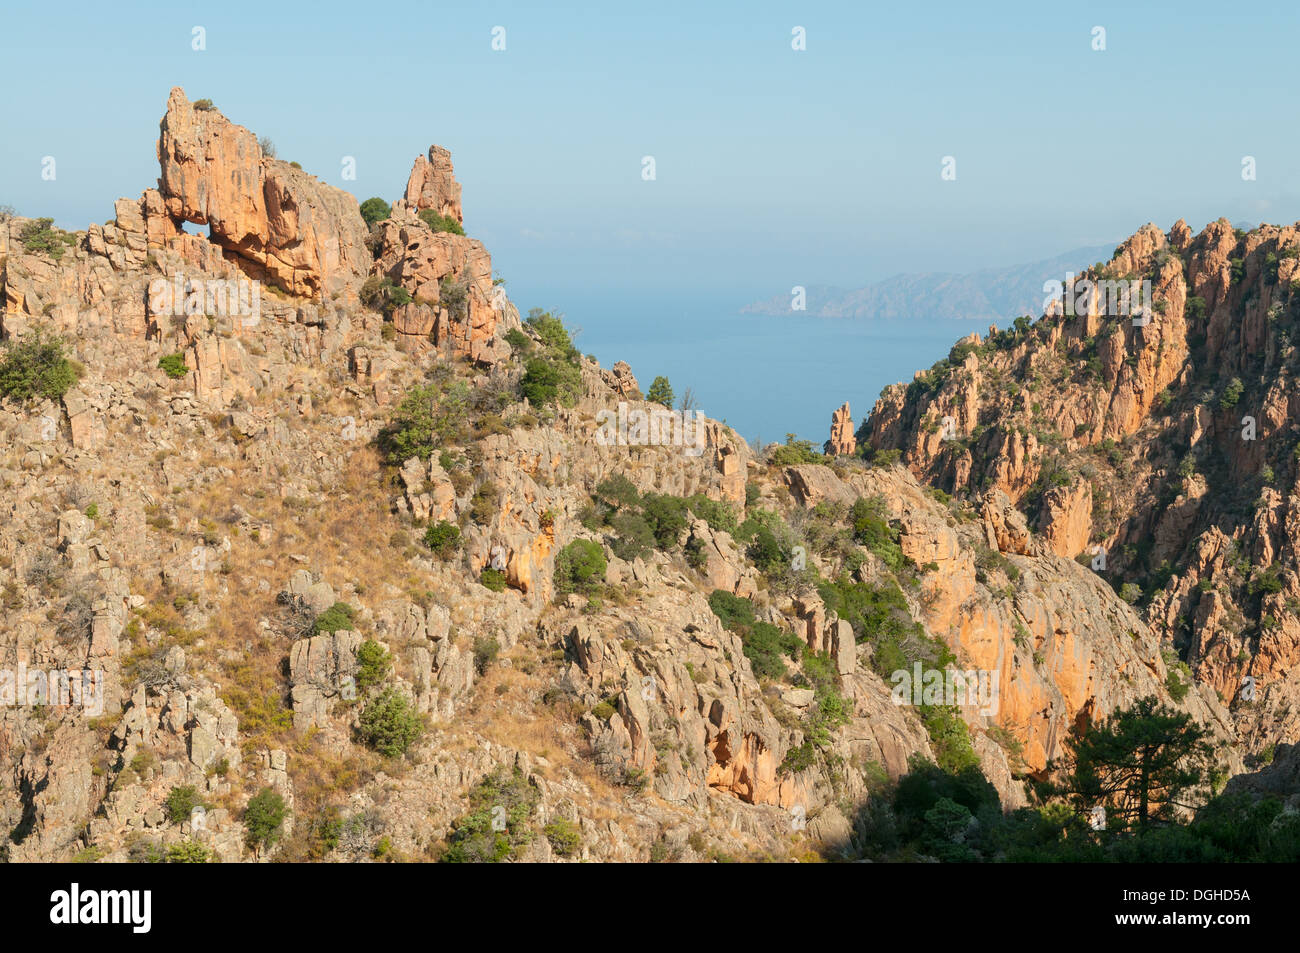 Calanques de Piana, l'ouest de la Corse, France Banque D'Images